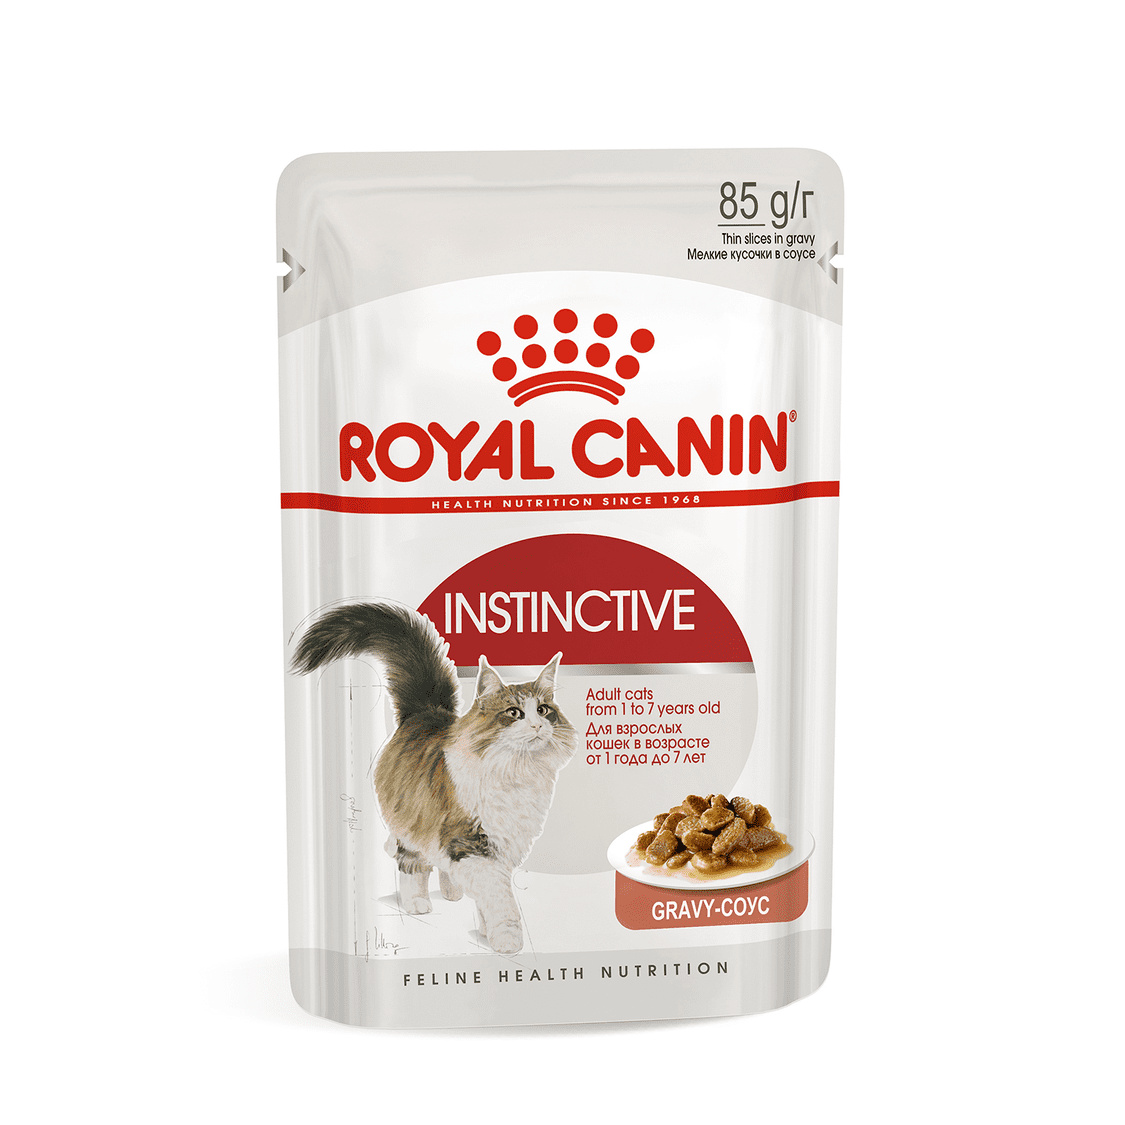 Royal Canin паучи Royal Canin паучи кусочки в соусе для кошек 1-7 лет (85 г) royal canin паучи royal canin паучи кусочки в желе для кастрированных кошек 1 7лет 28 шт